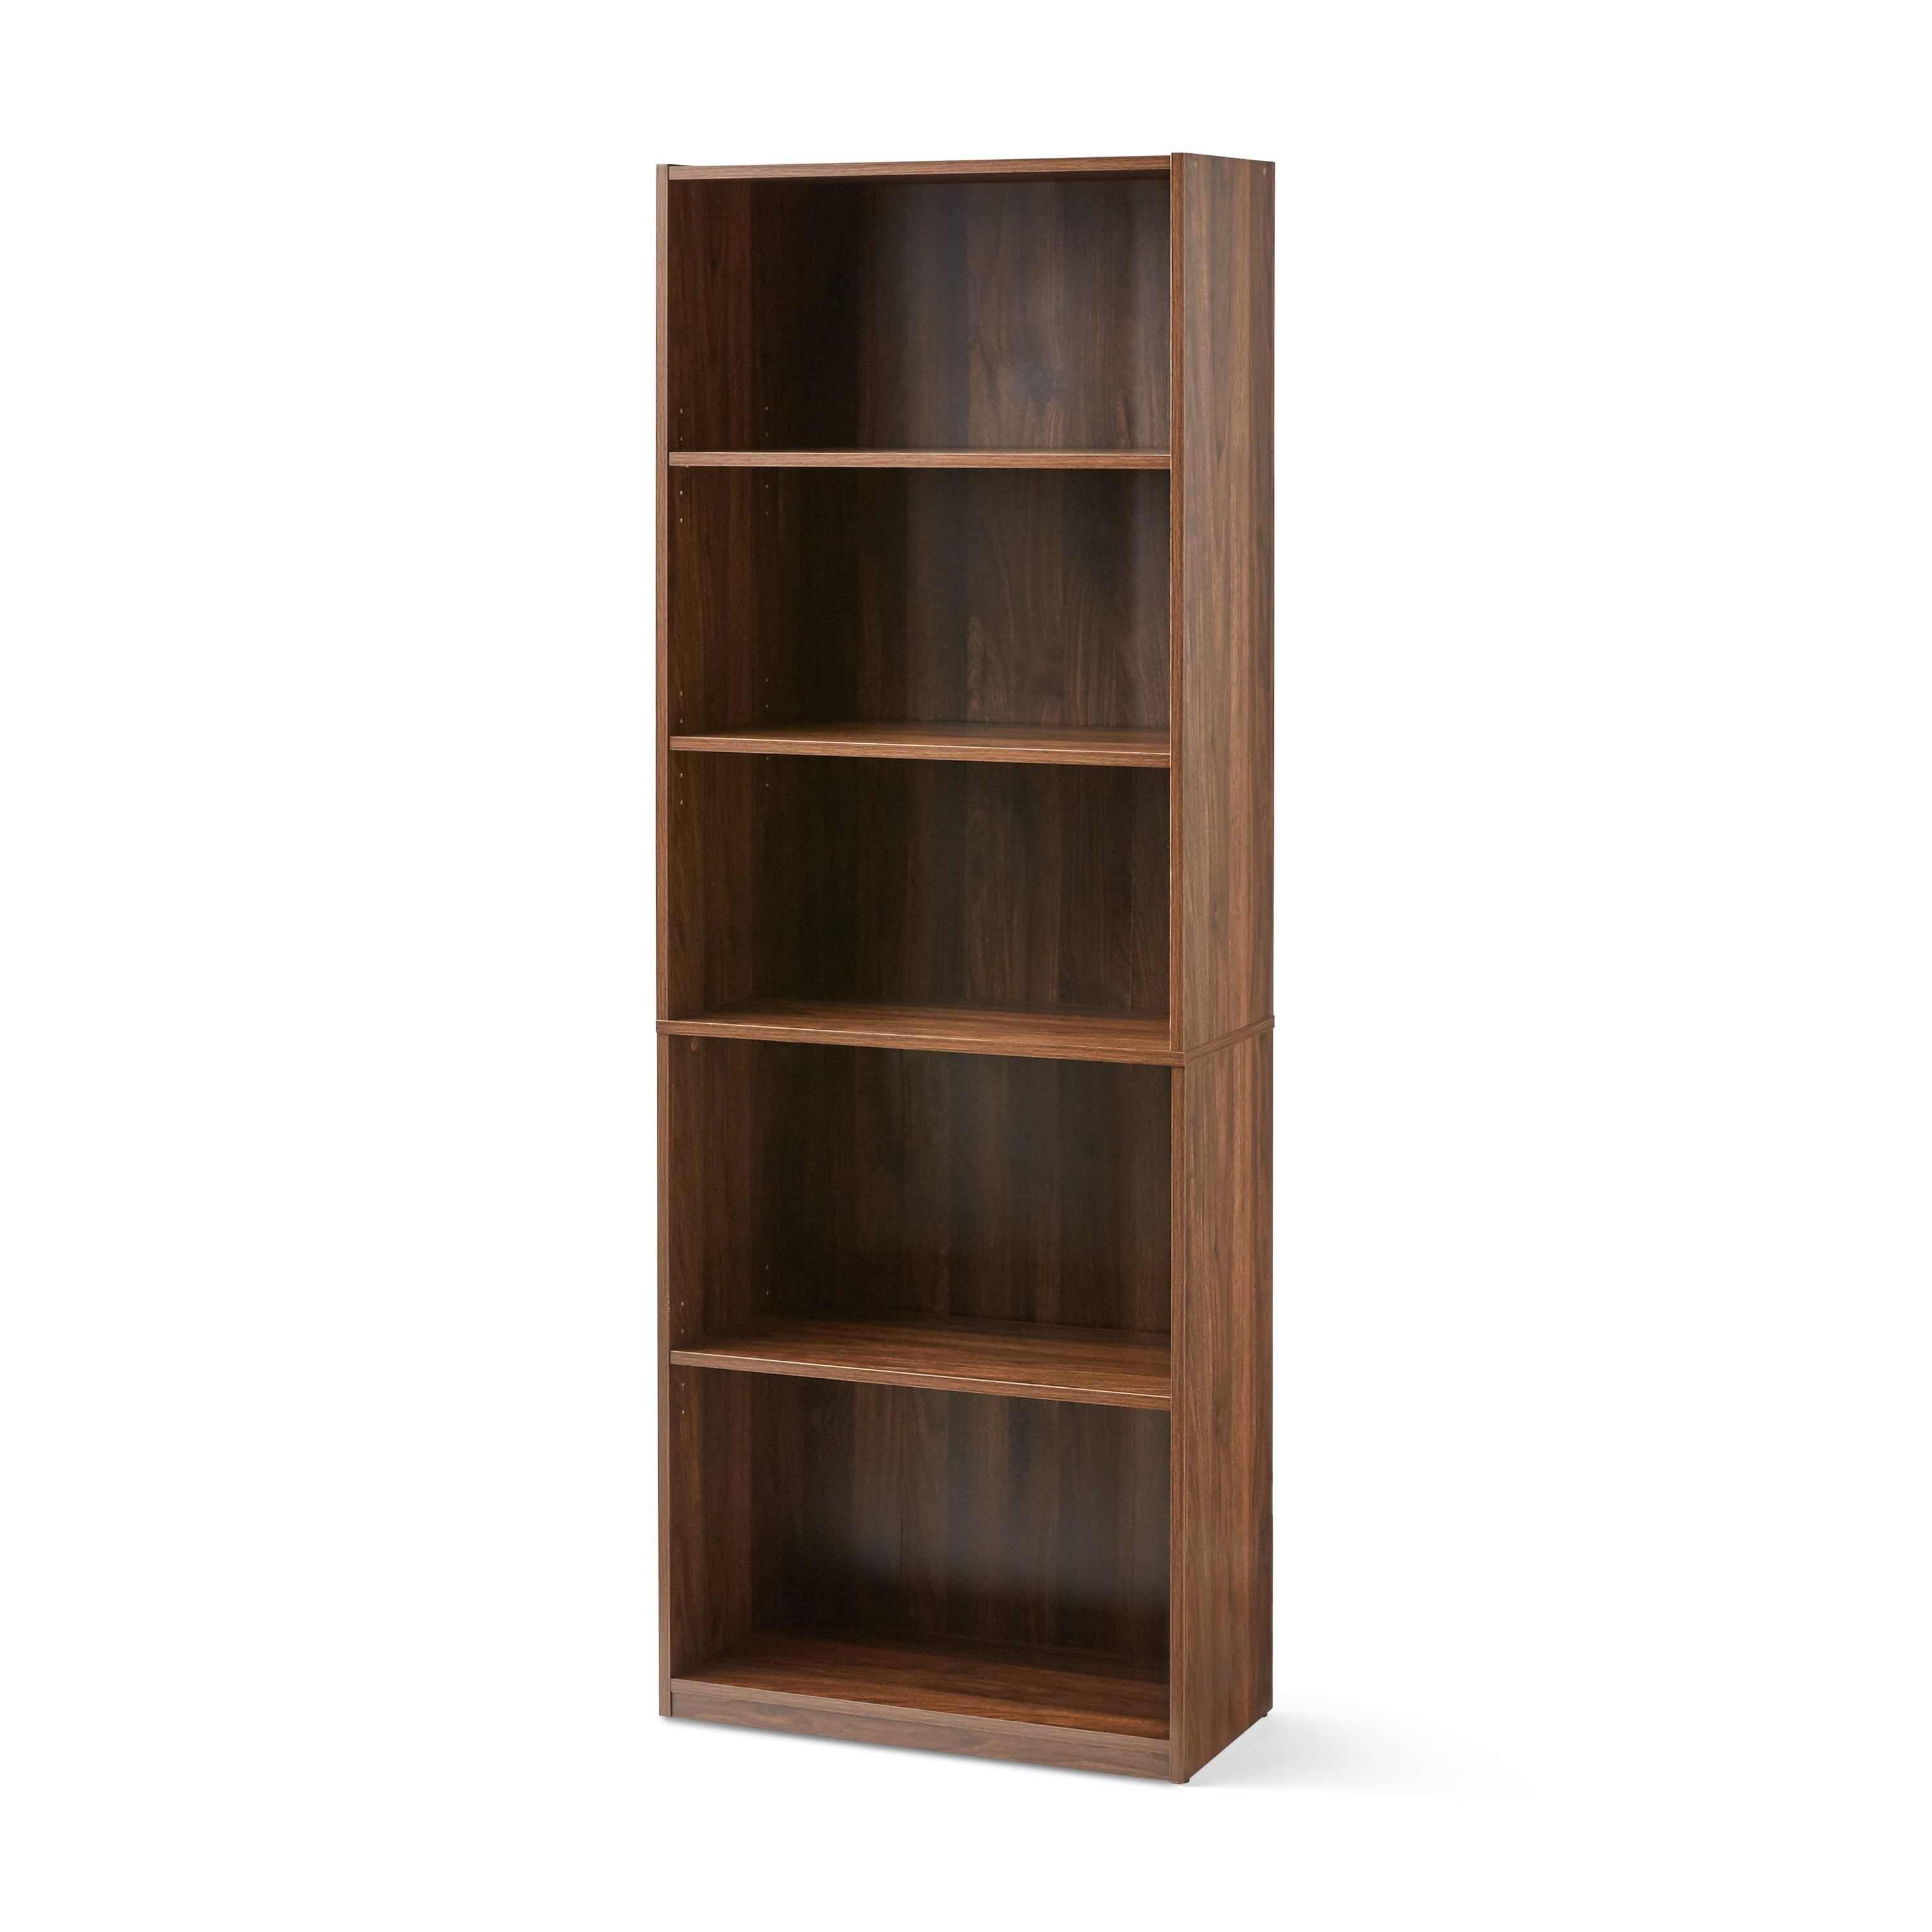 Mainstays 5-Shelf Bookcase with Adjustable Shelves, Canyon Walnut - 3